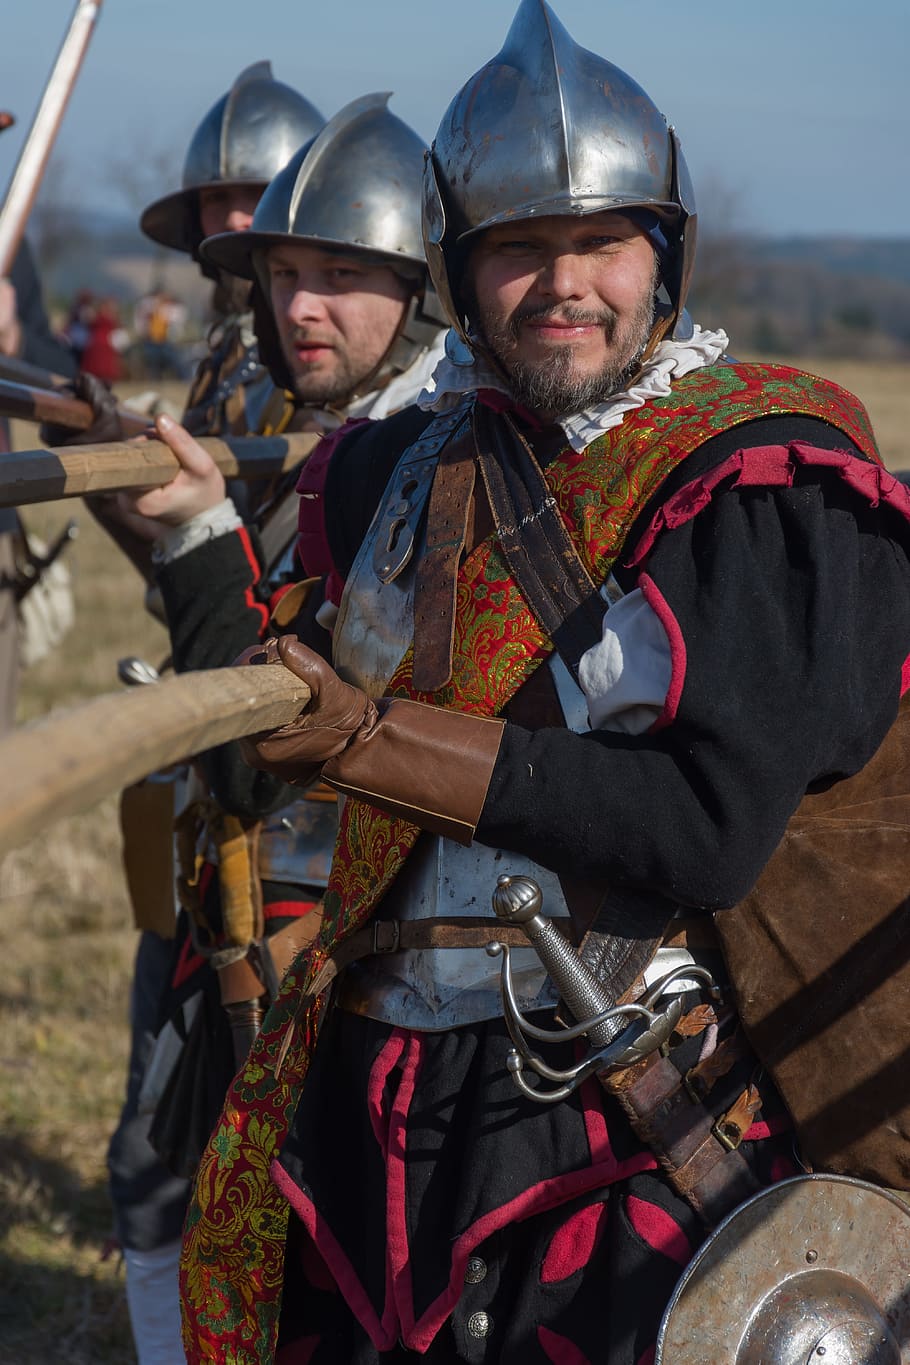 Pikanýr, Battle Of Jankau, battle re-enactment, historical costume, HD wallpaper